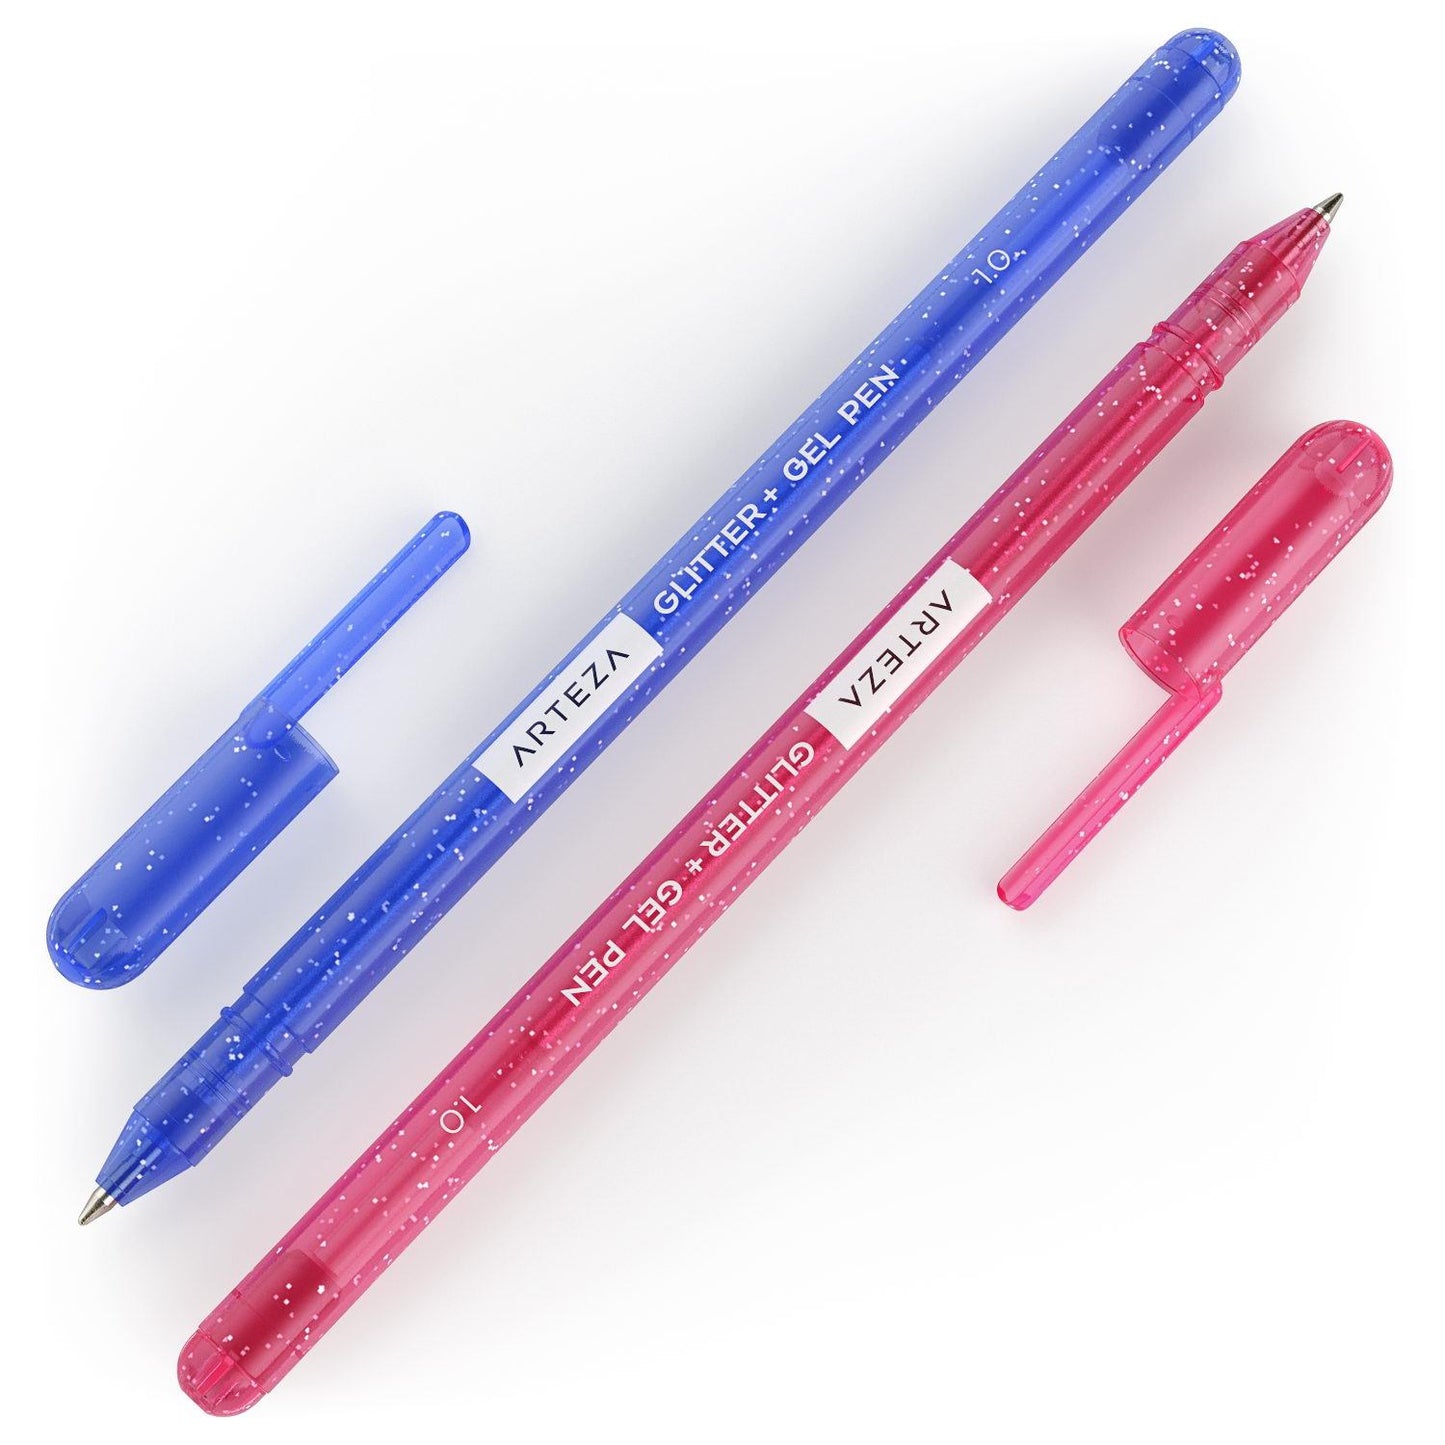 Arteza Super Glitter Iridescent Gel Pens, Swatch & Review